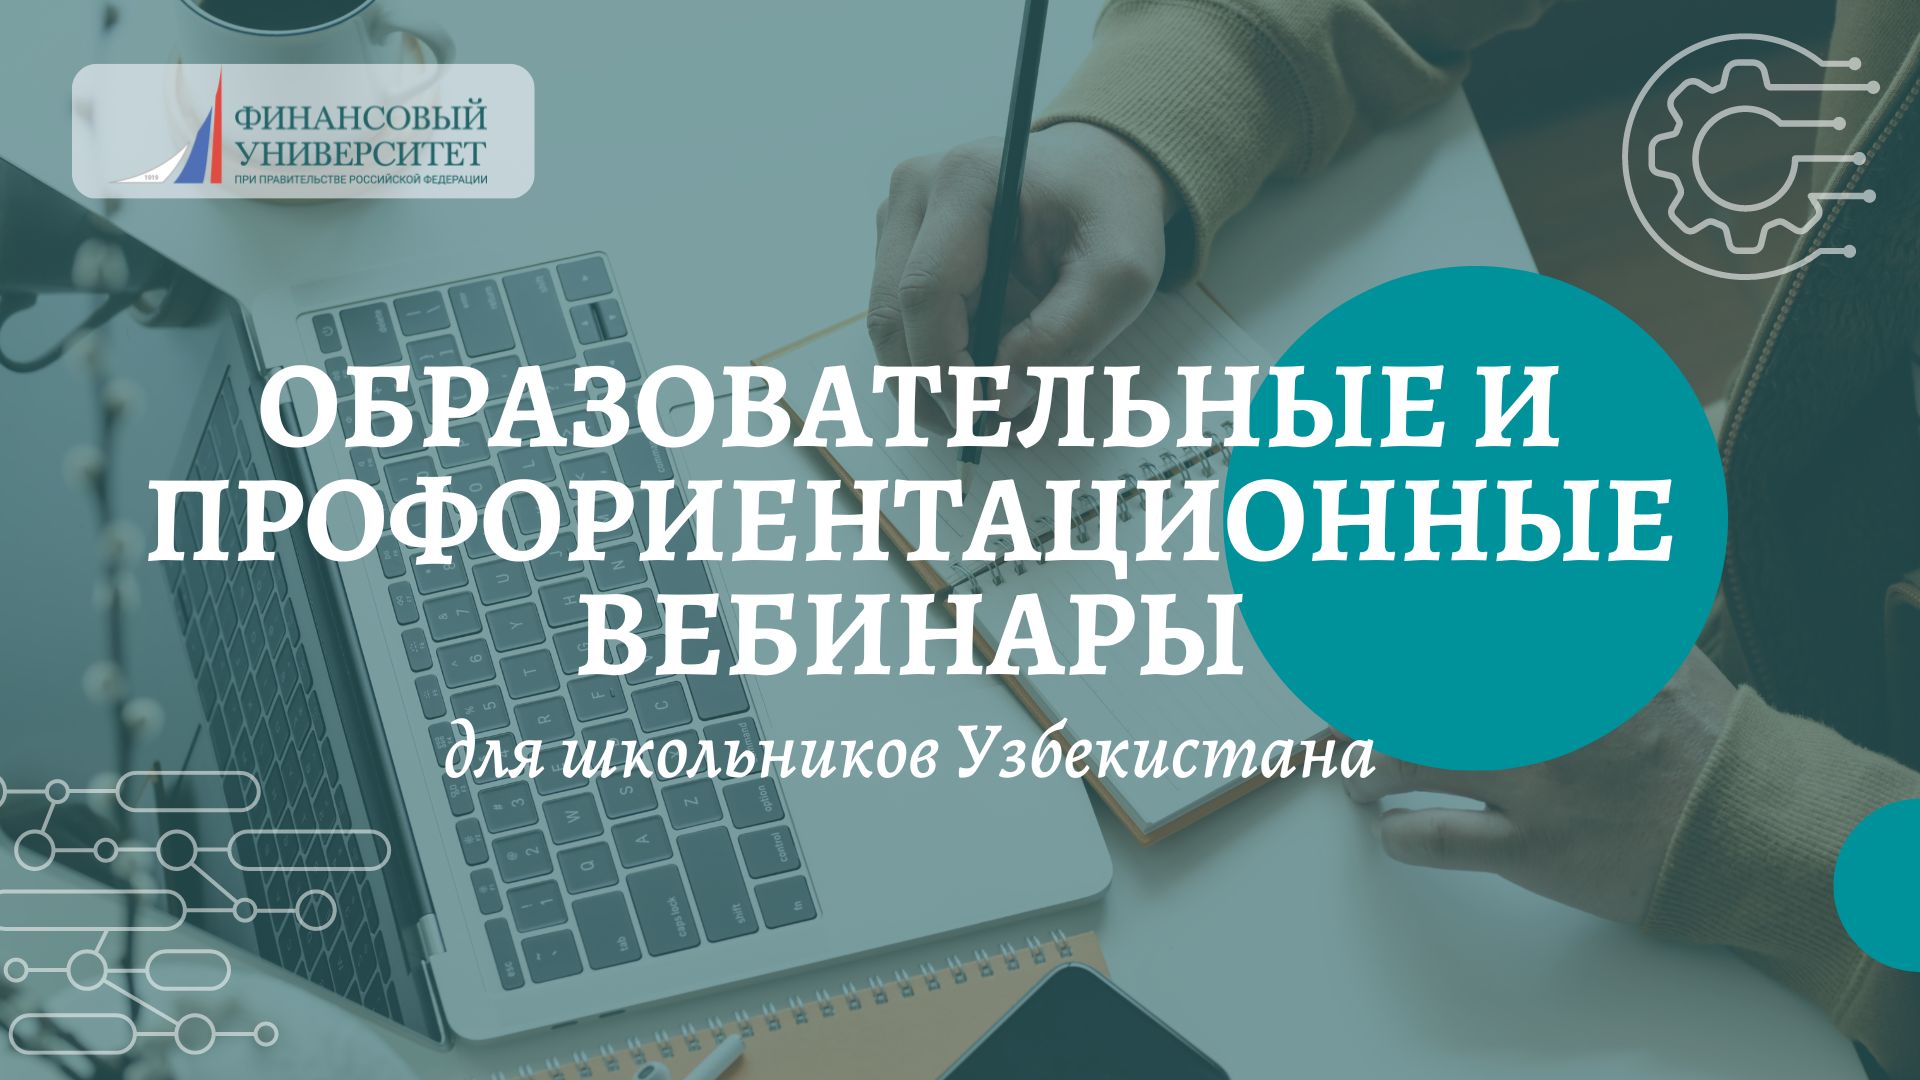 Финансовый университет запустил серию образовательных и профориентационных вебинаров для школьников Узбекистана